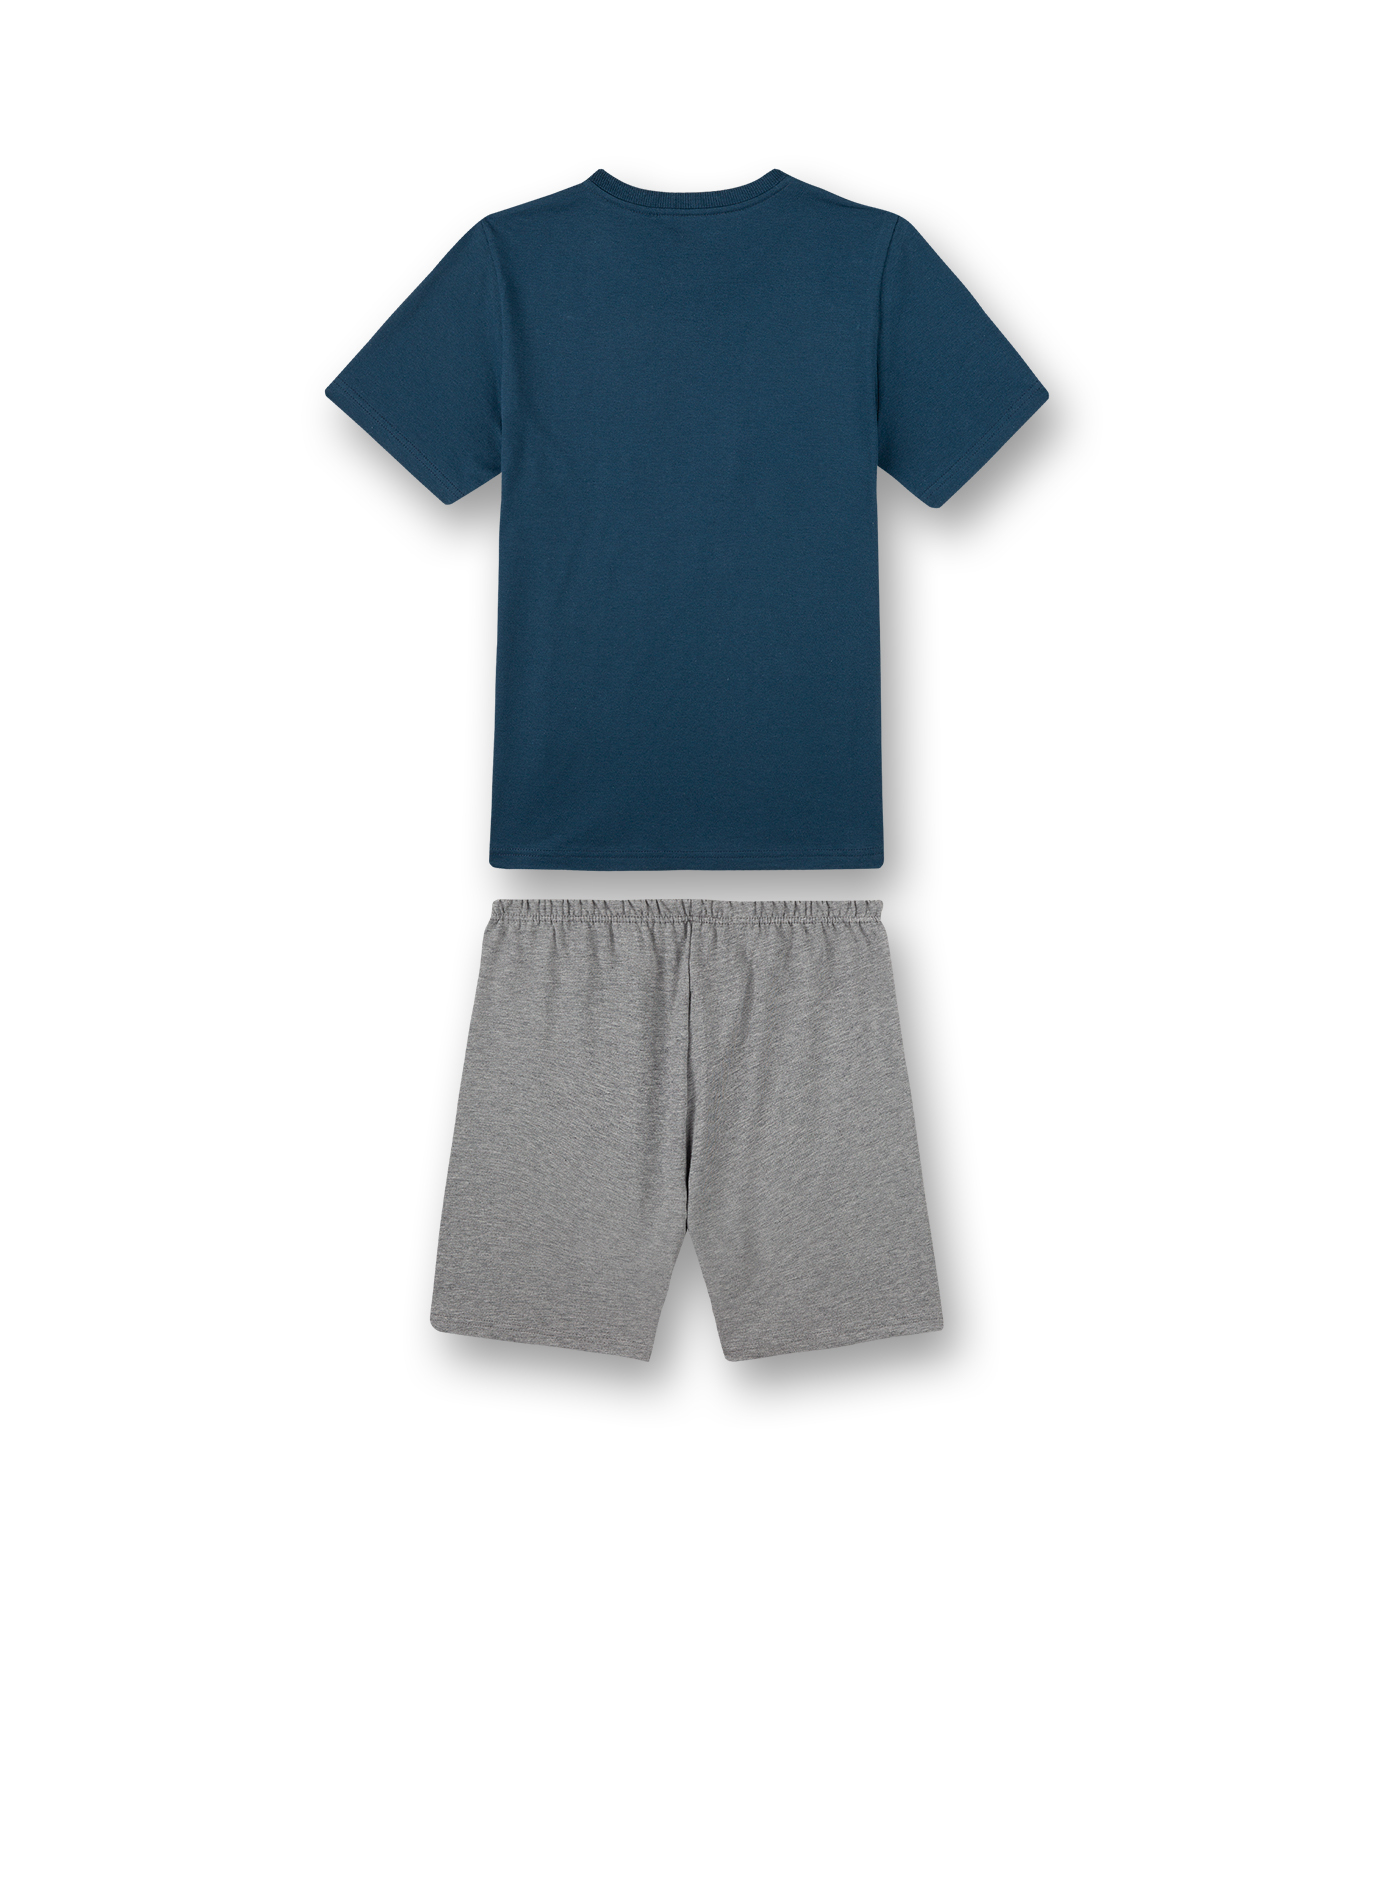 Jungen-Schlafanzug kurz Blau Skate